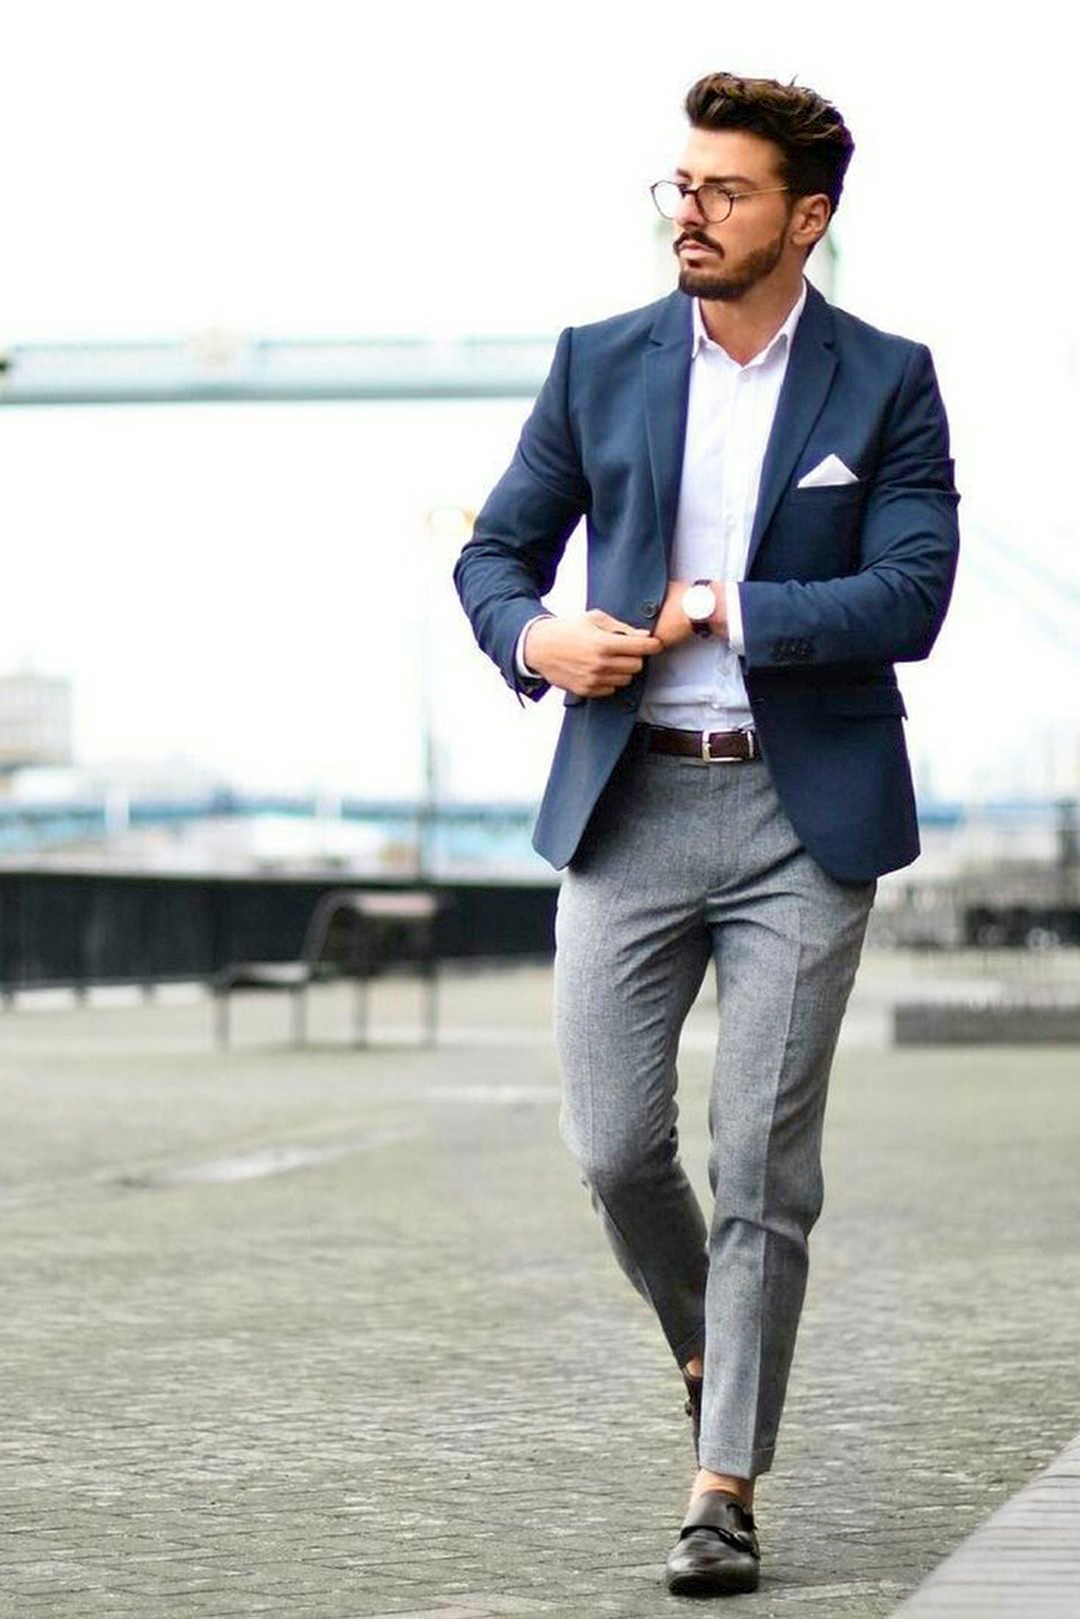 Smart Casual Dress Code & Attire for Men